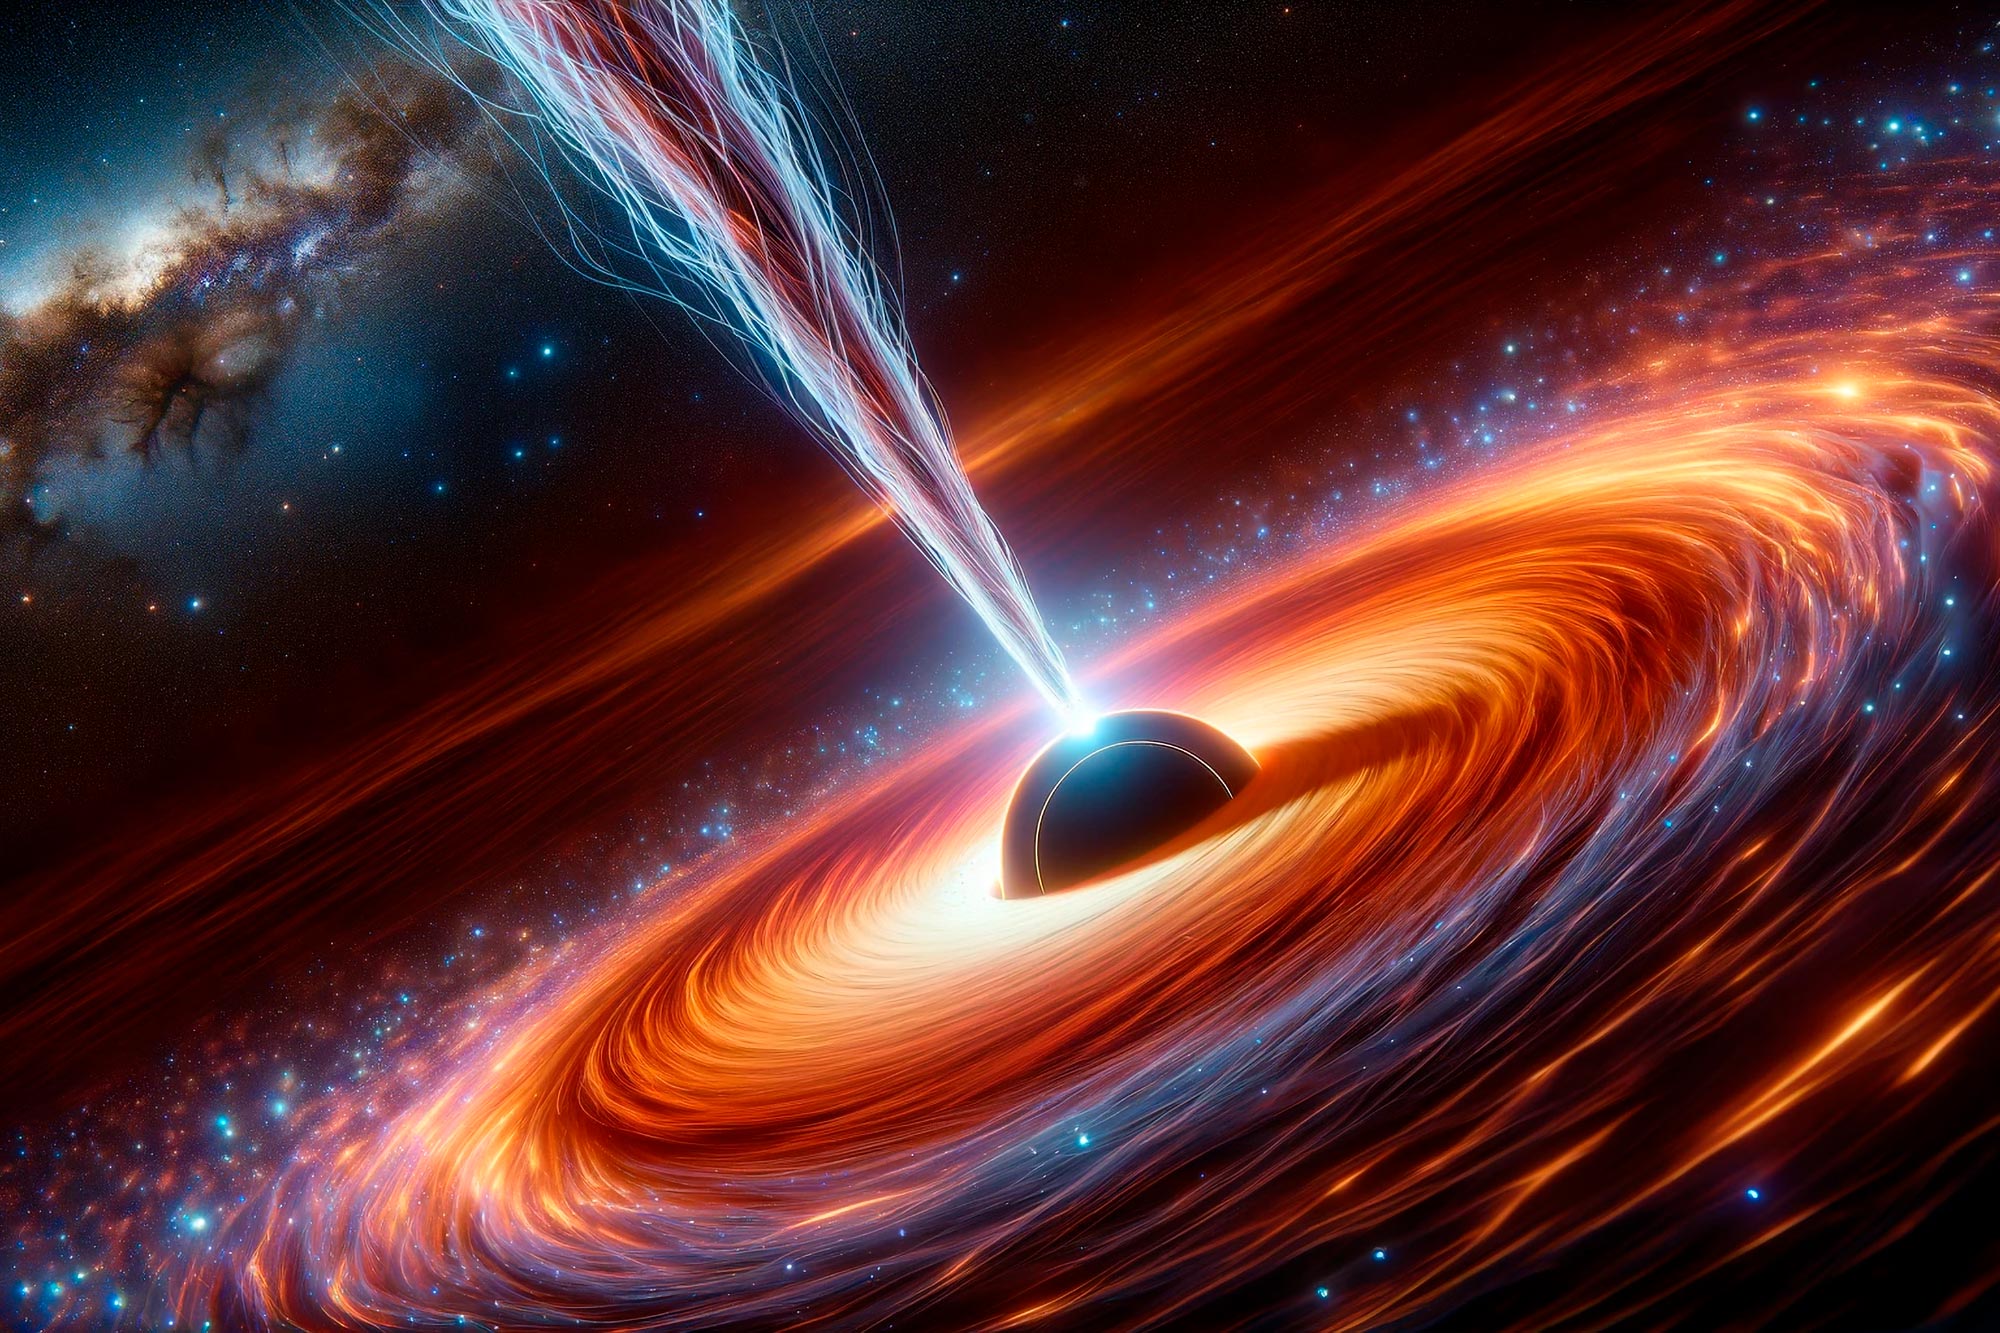 プリンストン天体物理学者たちがブラックホールジェットと銀河系「光線剣」の謎を解く